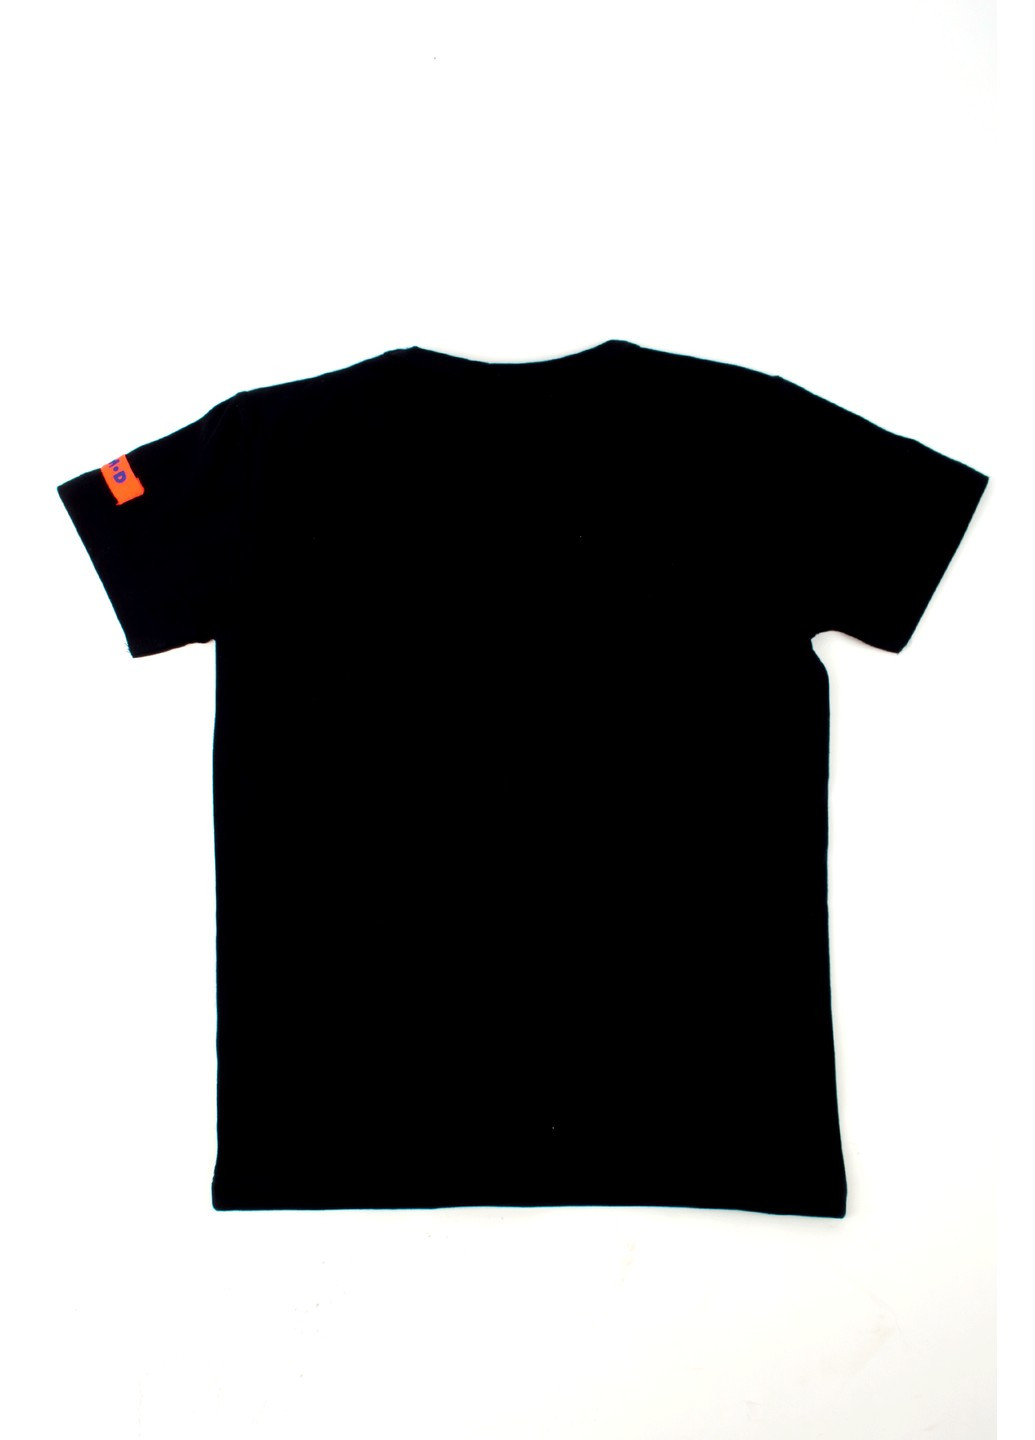 Черная футболка на мальчика tom-du черная с принтом malibu TOM DU